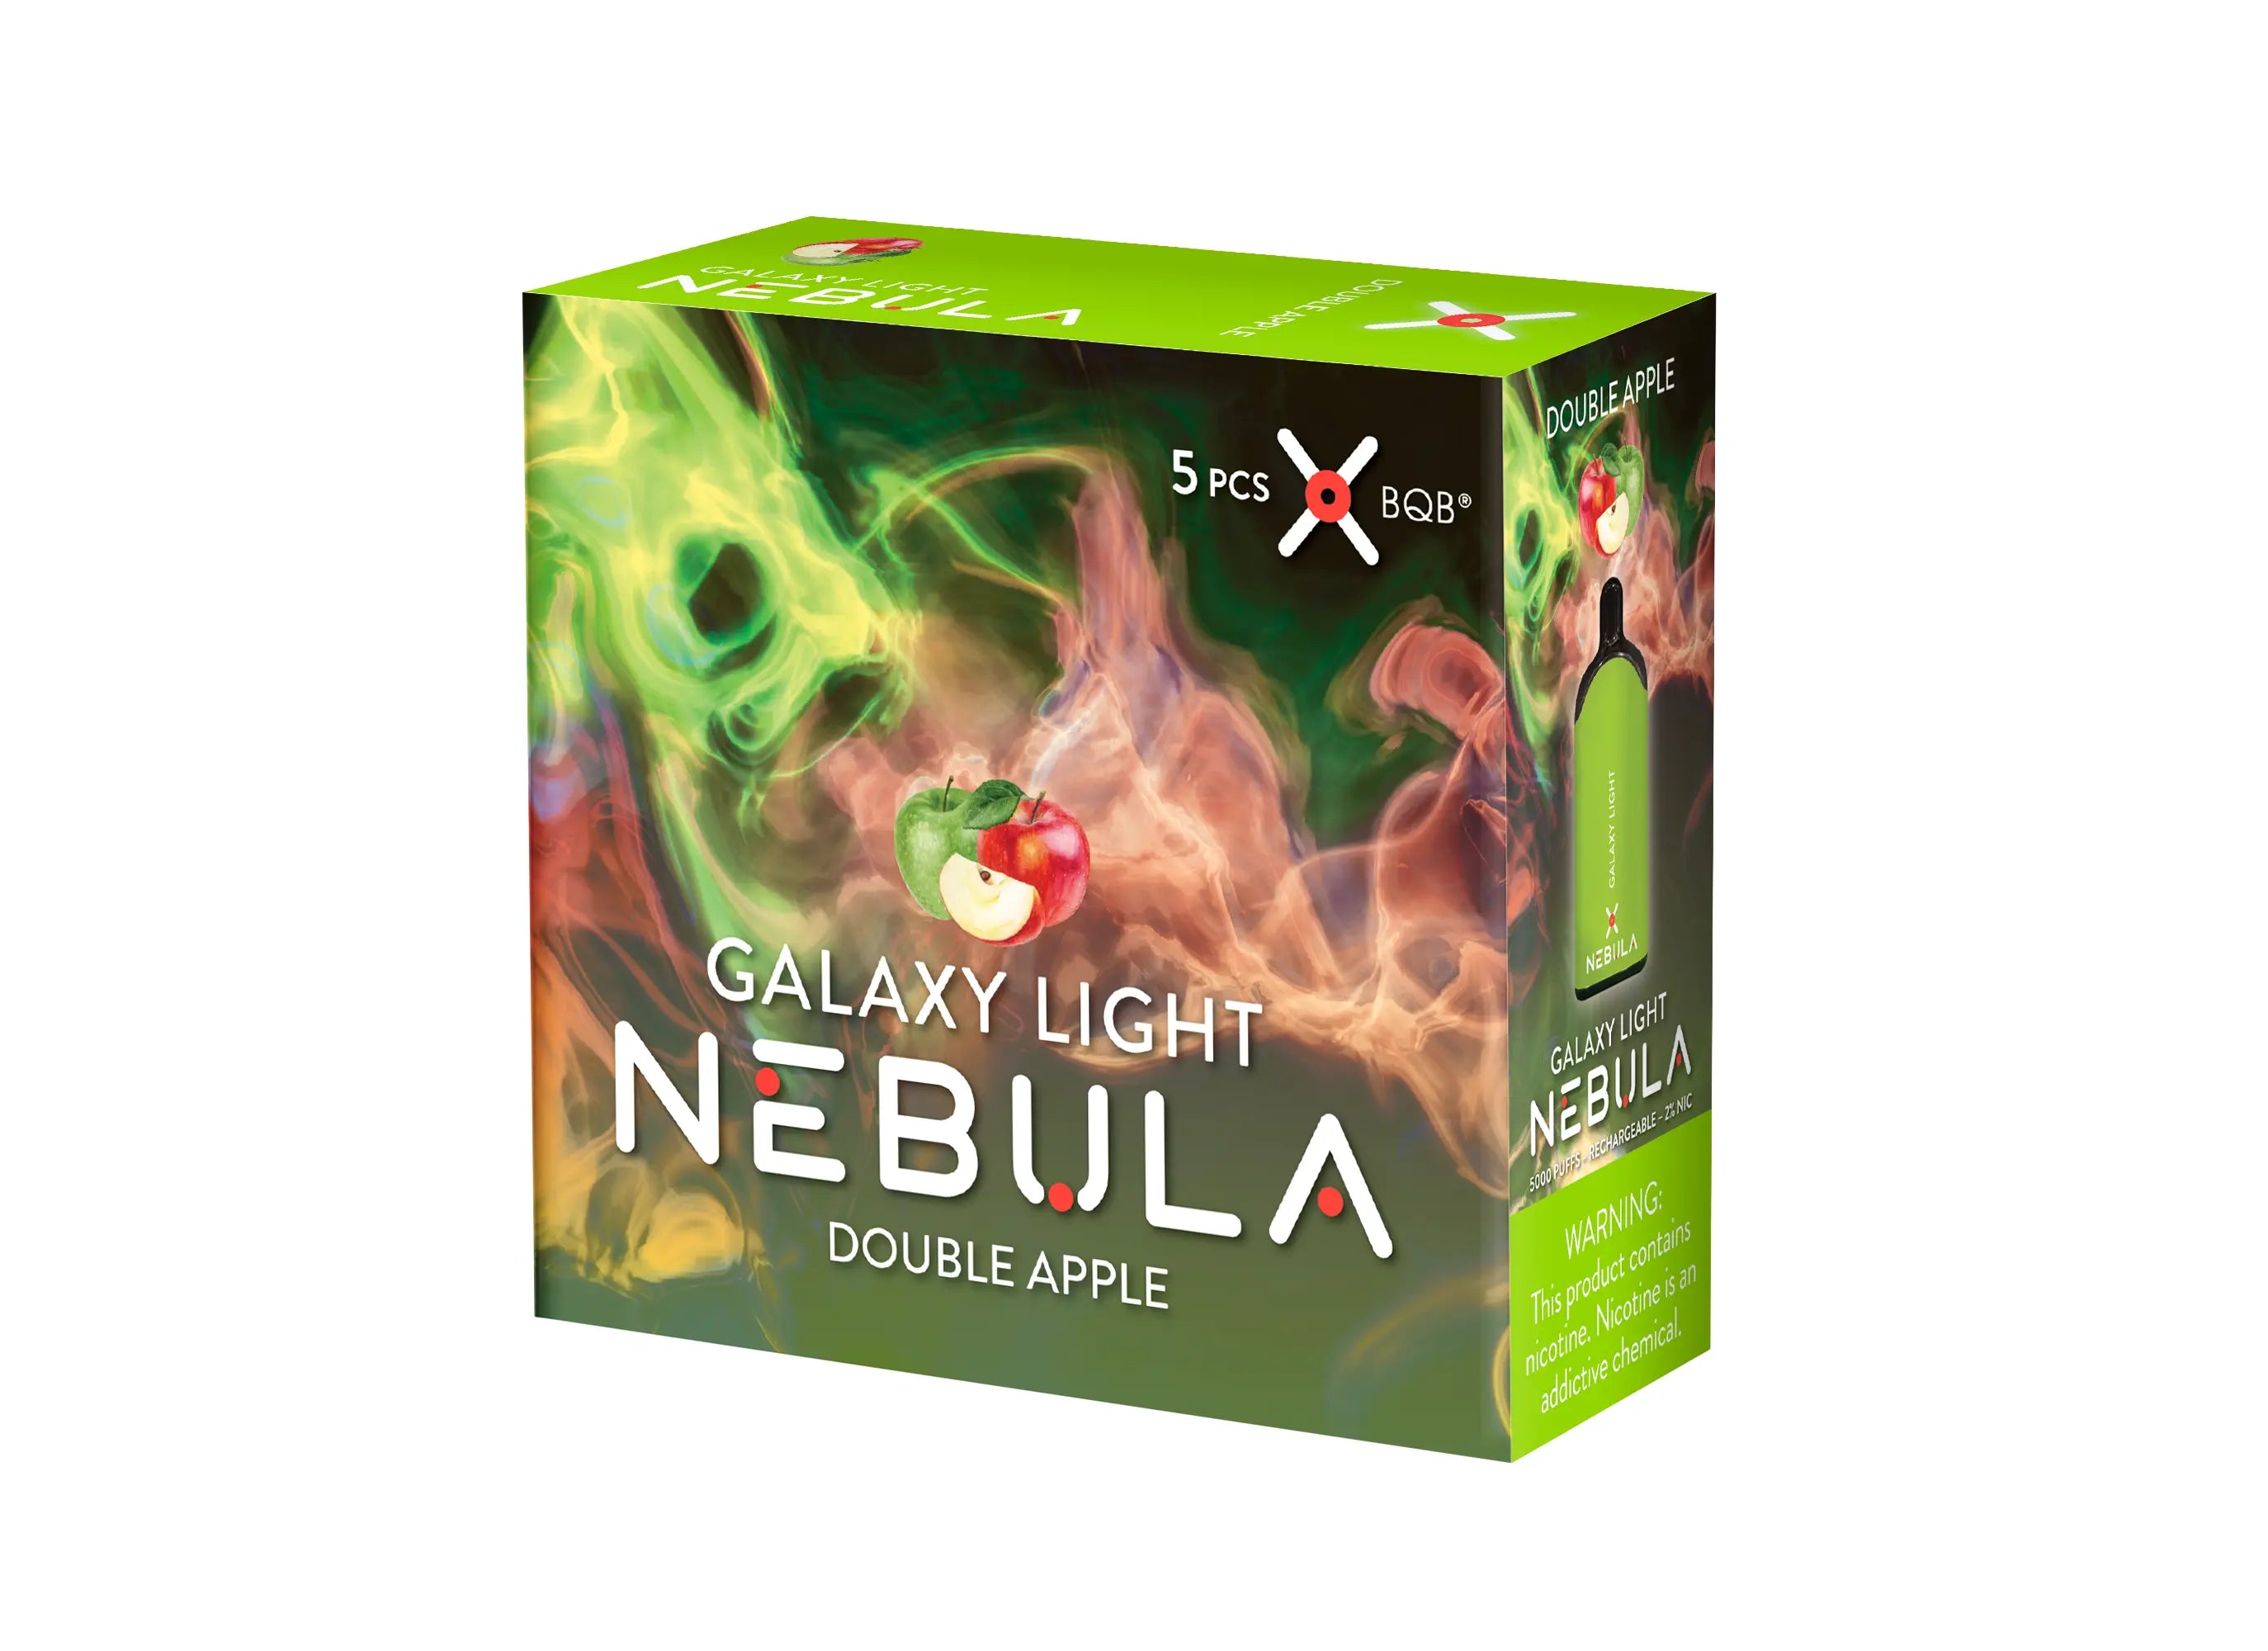 Nebula Galaxy Light 2% 5000 Puffs Vape - Double Apple - B2B Nebula